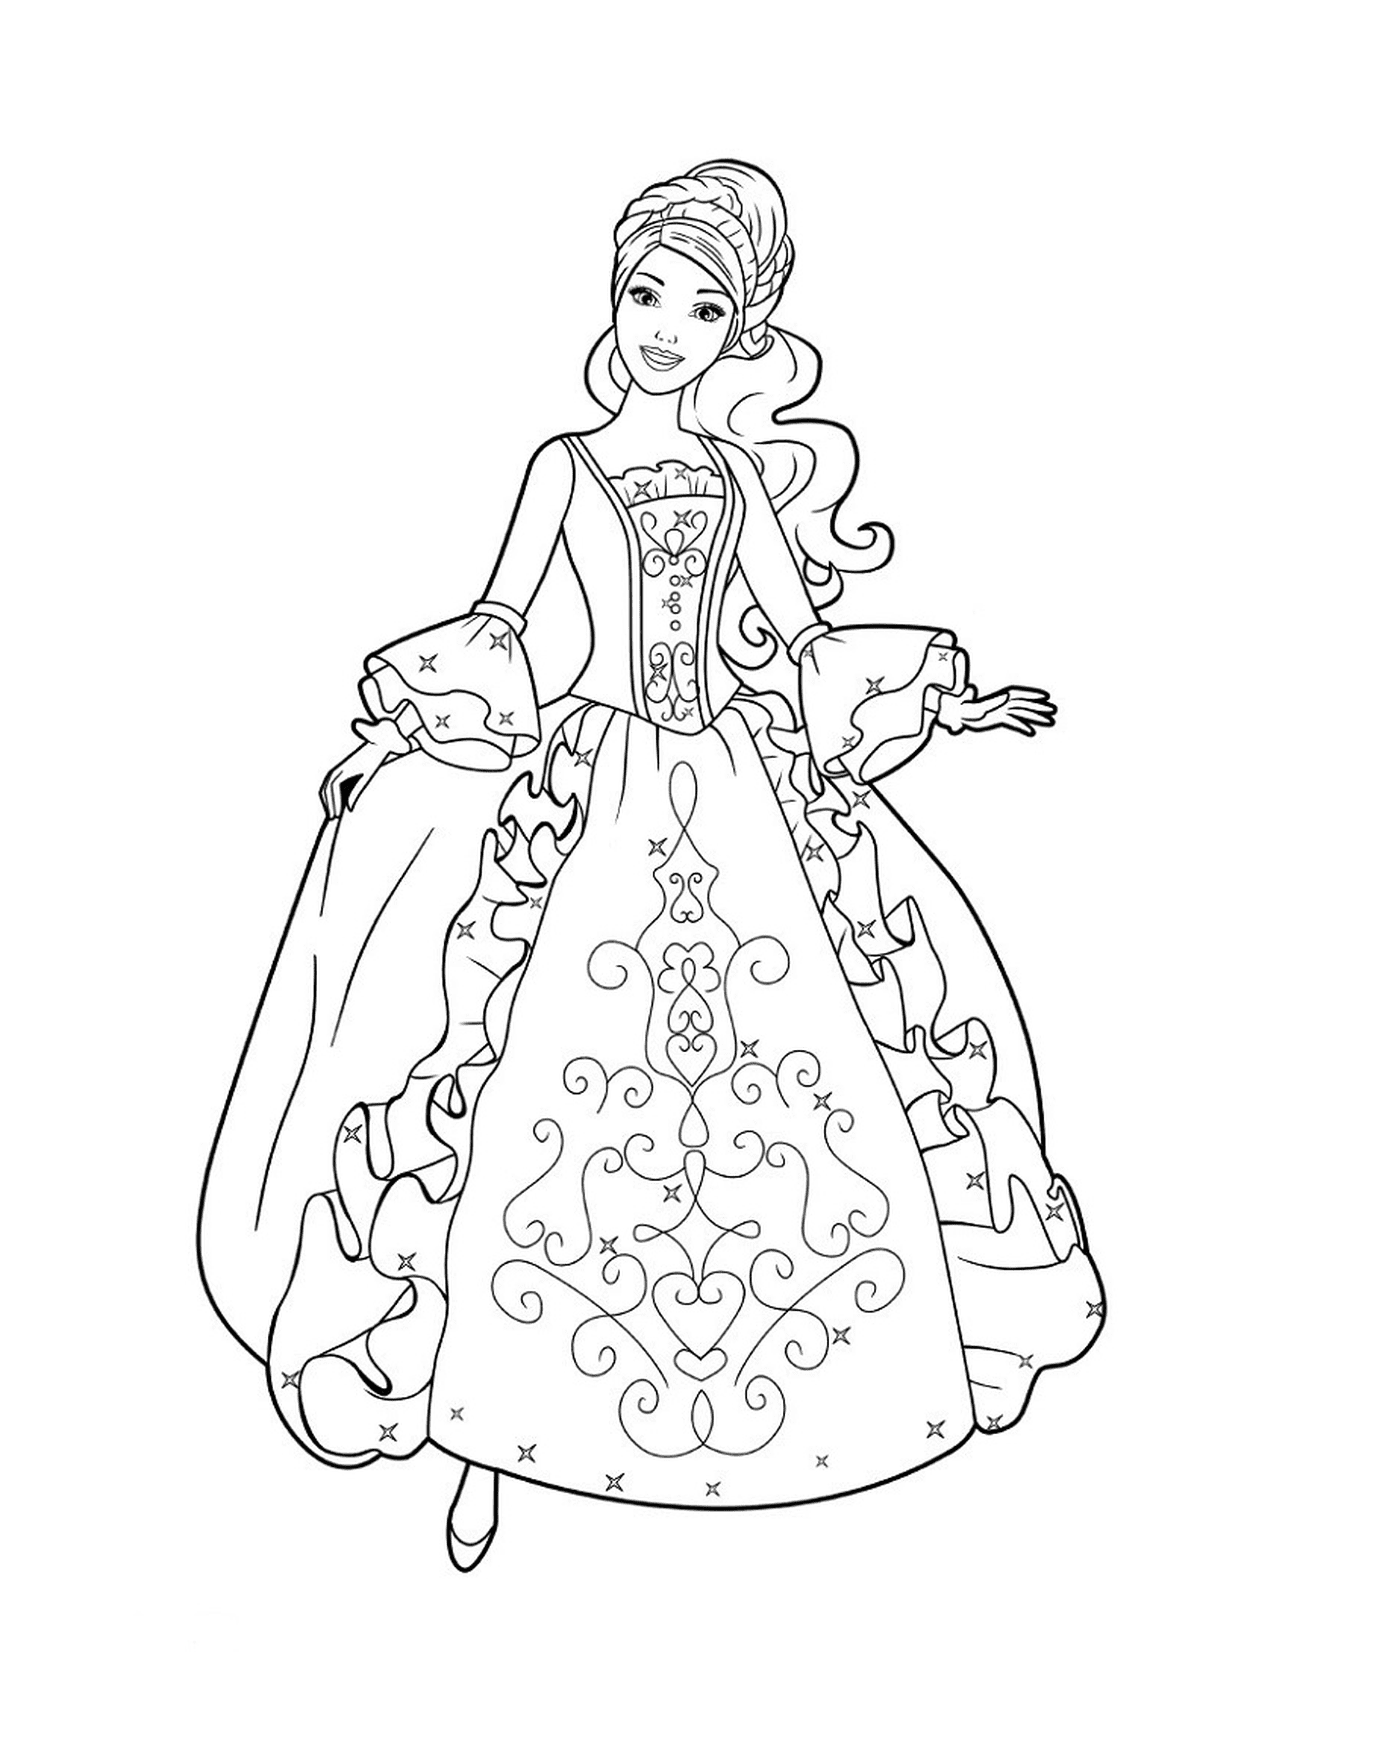  राजकुमारी बारमा एक सुंदर पोशाक के साथ 